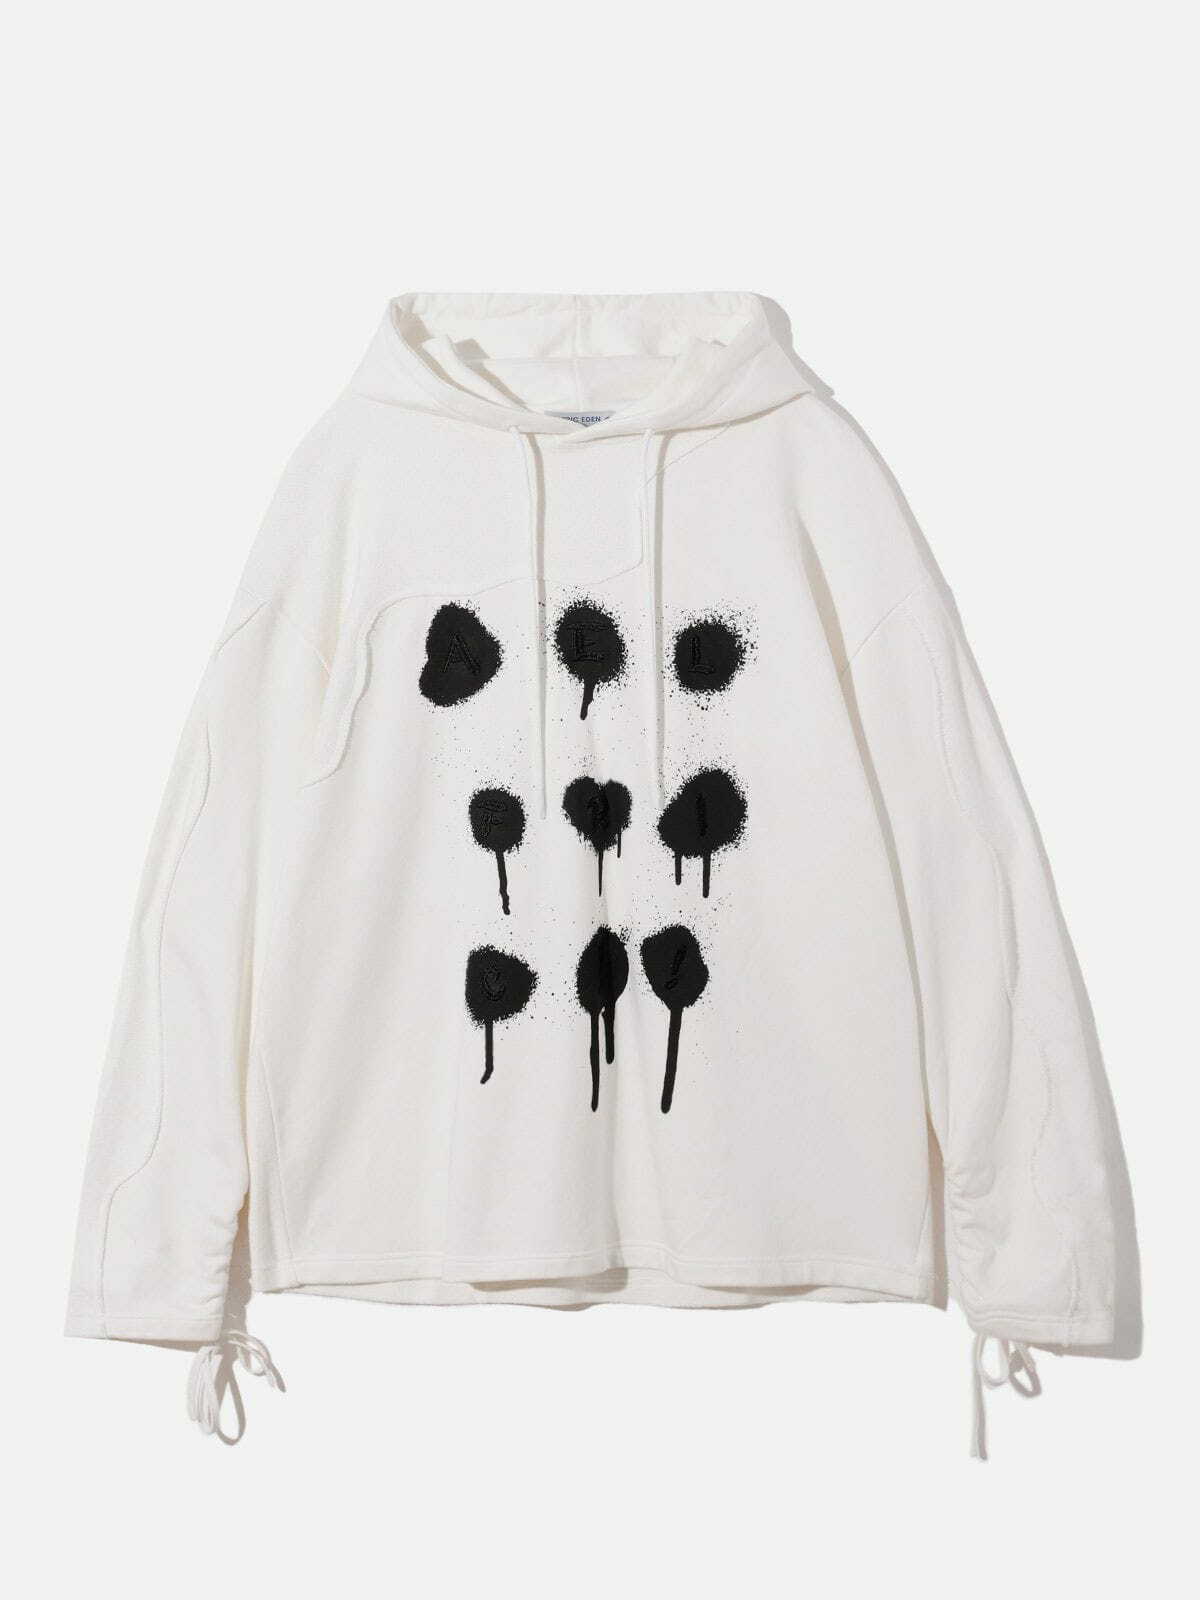 retro bullet holes hoodie urban streetwear 6107